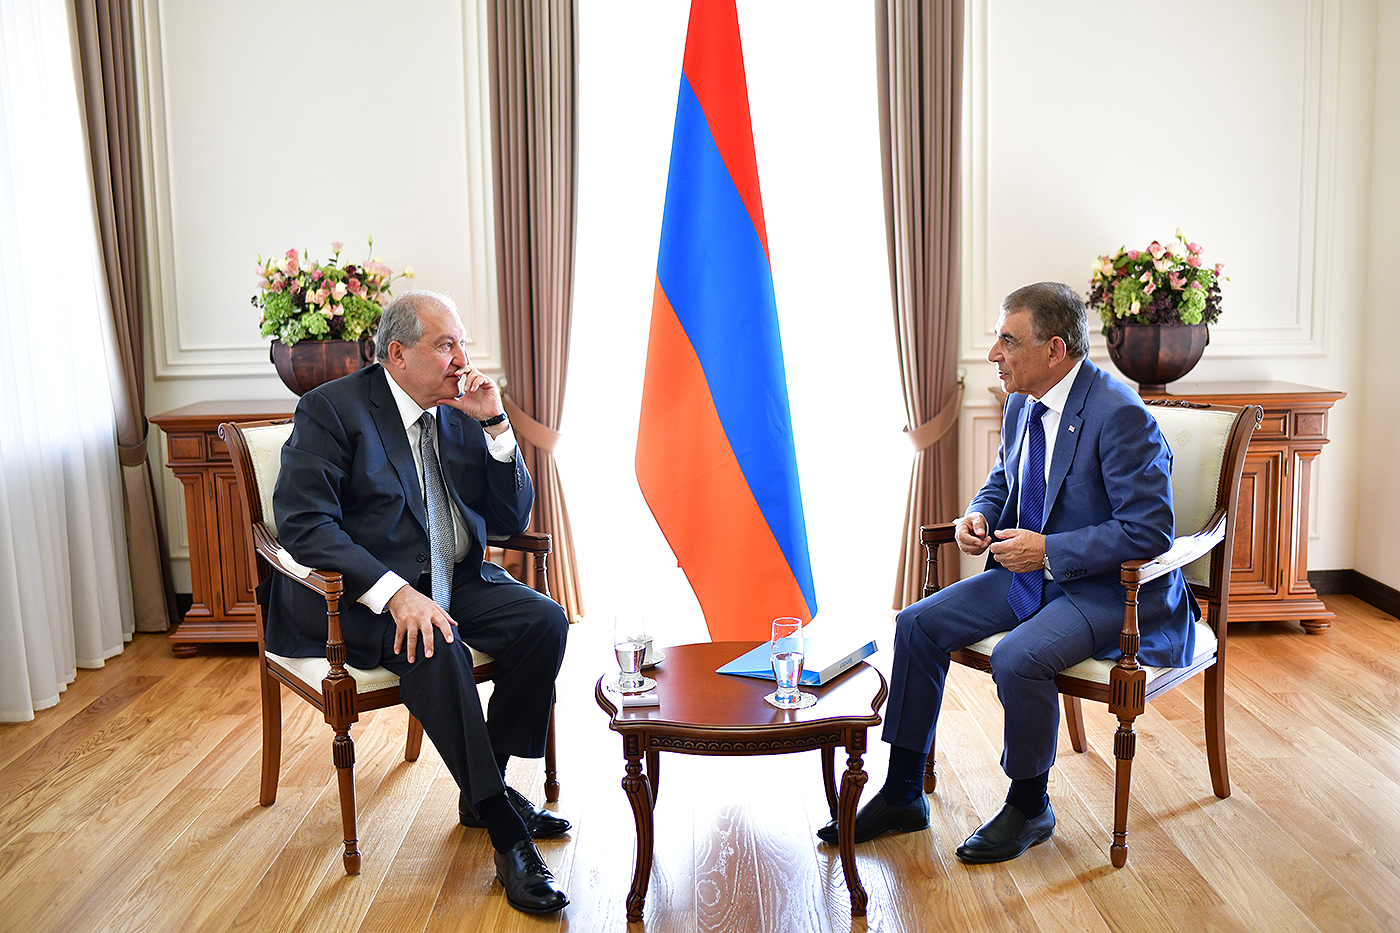 Armen Sarkissian and Ara Babloyan held a meeting